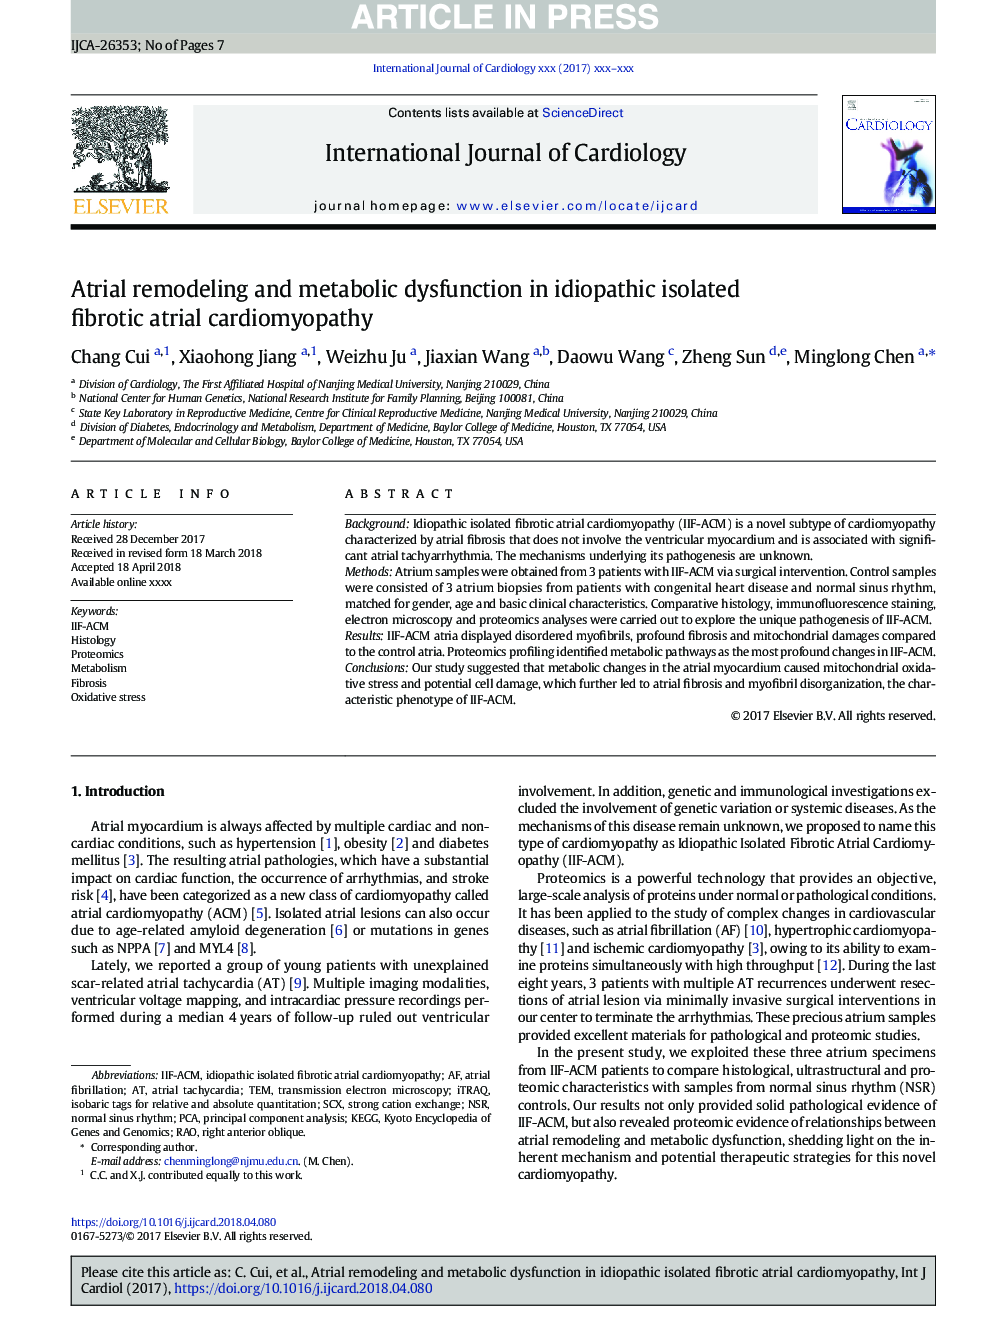 تغییرات دهلیزی و اختلال متابولیک در بیماران مبتلا به کاردیومیوپاتی دهلیزی فیبروتیک جدا شده ایادیوپاتی 